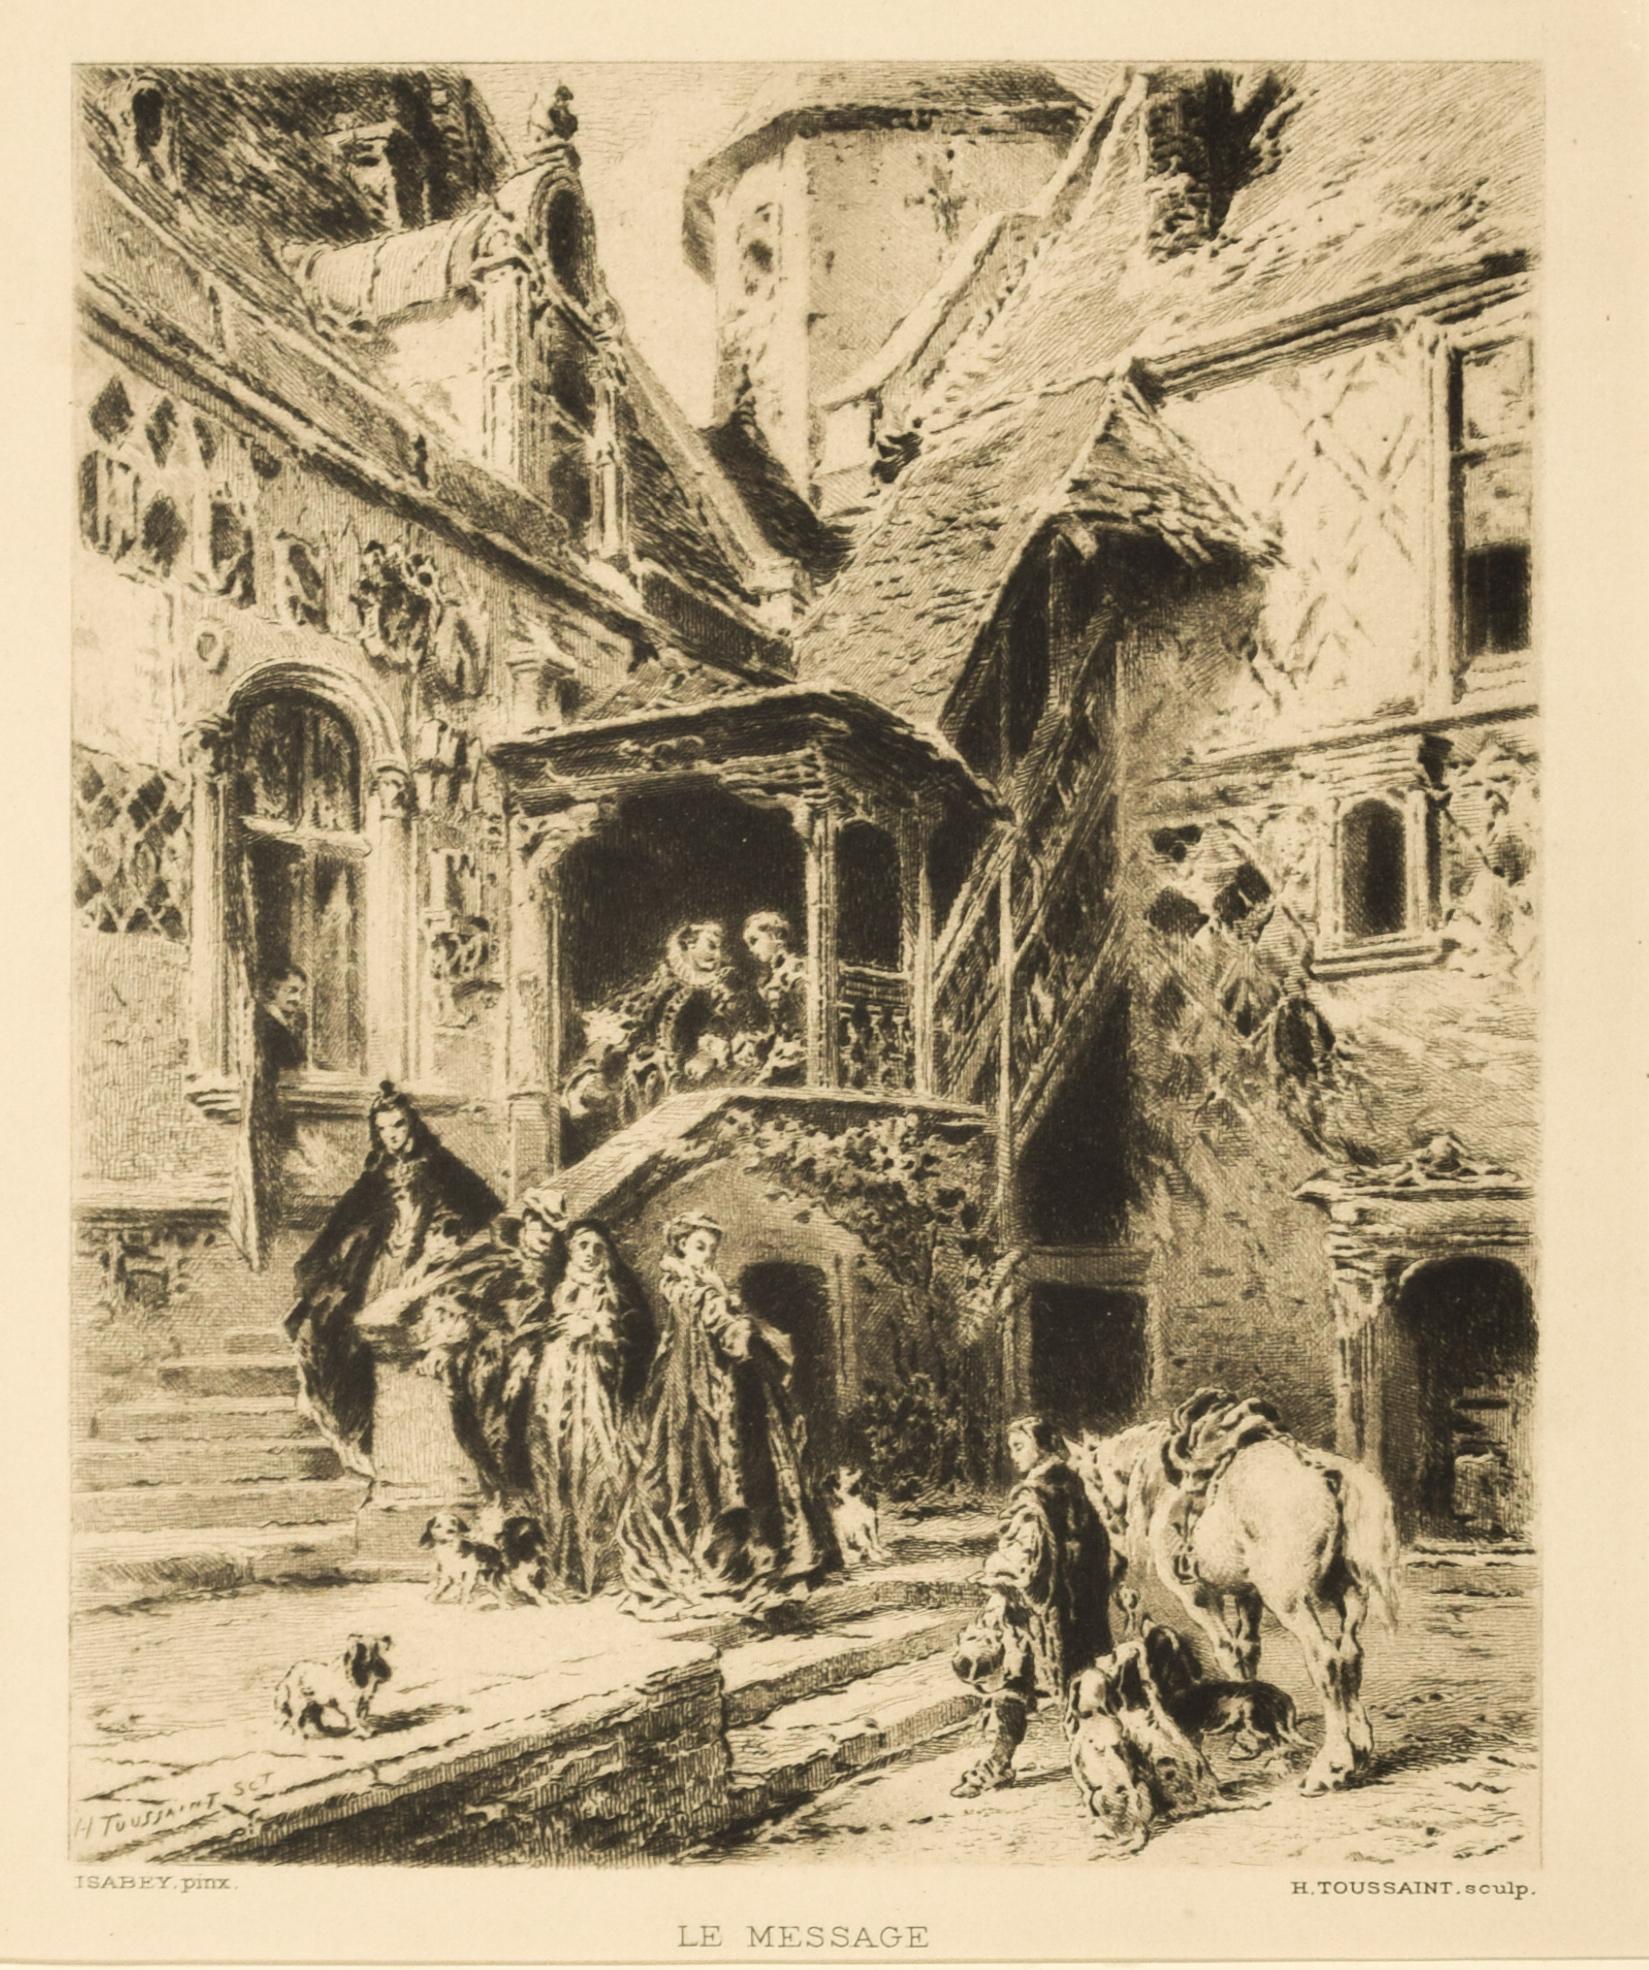 Henri-Charles Toussaint Figurative Print - Le Message - Original Etching by H.-C. Toussaint after E. Isabey - 1880